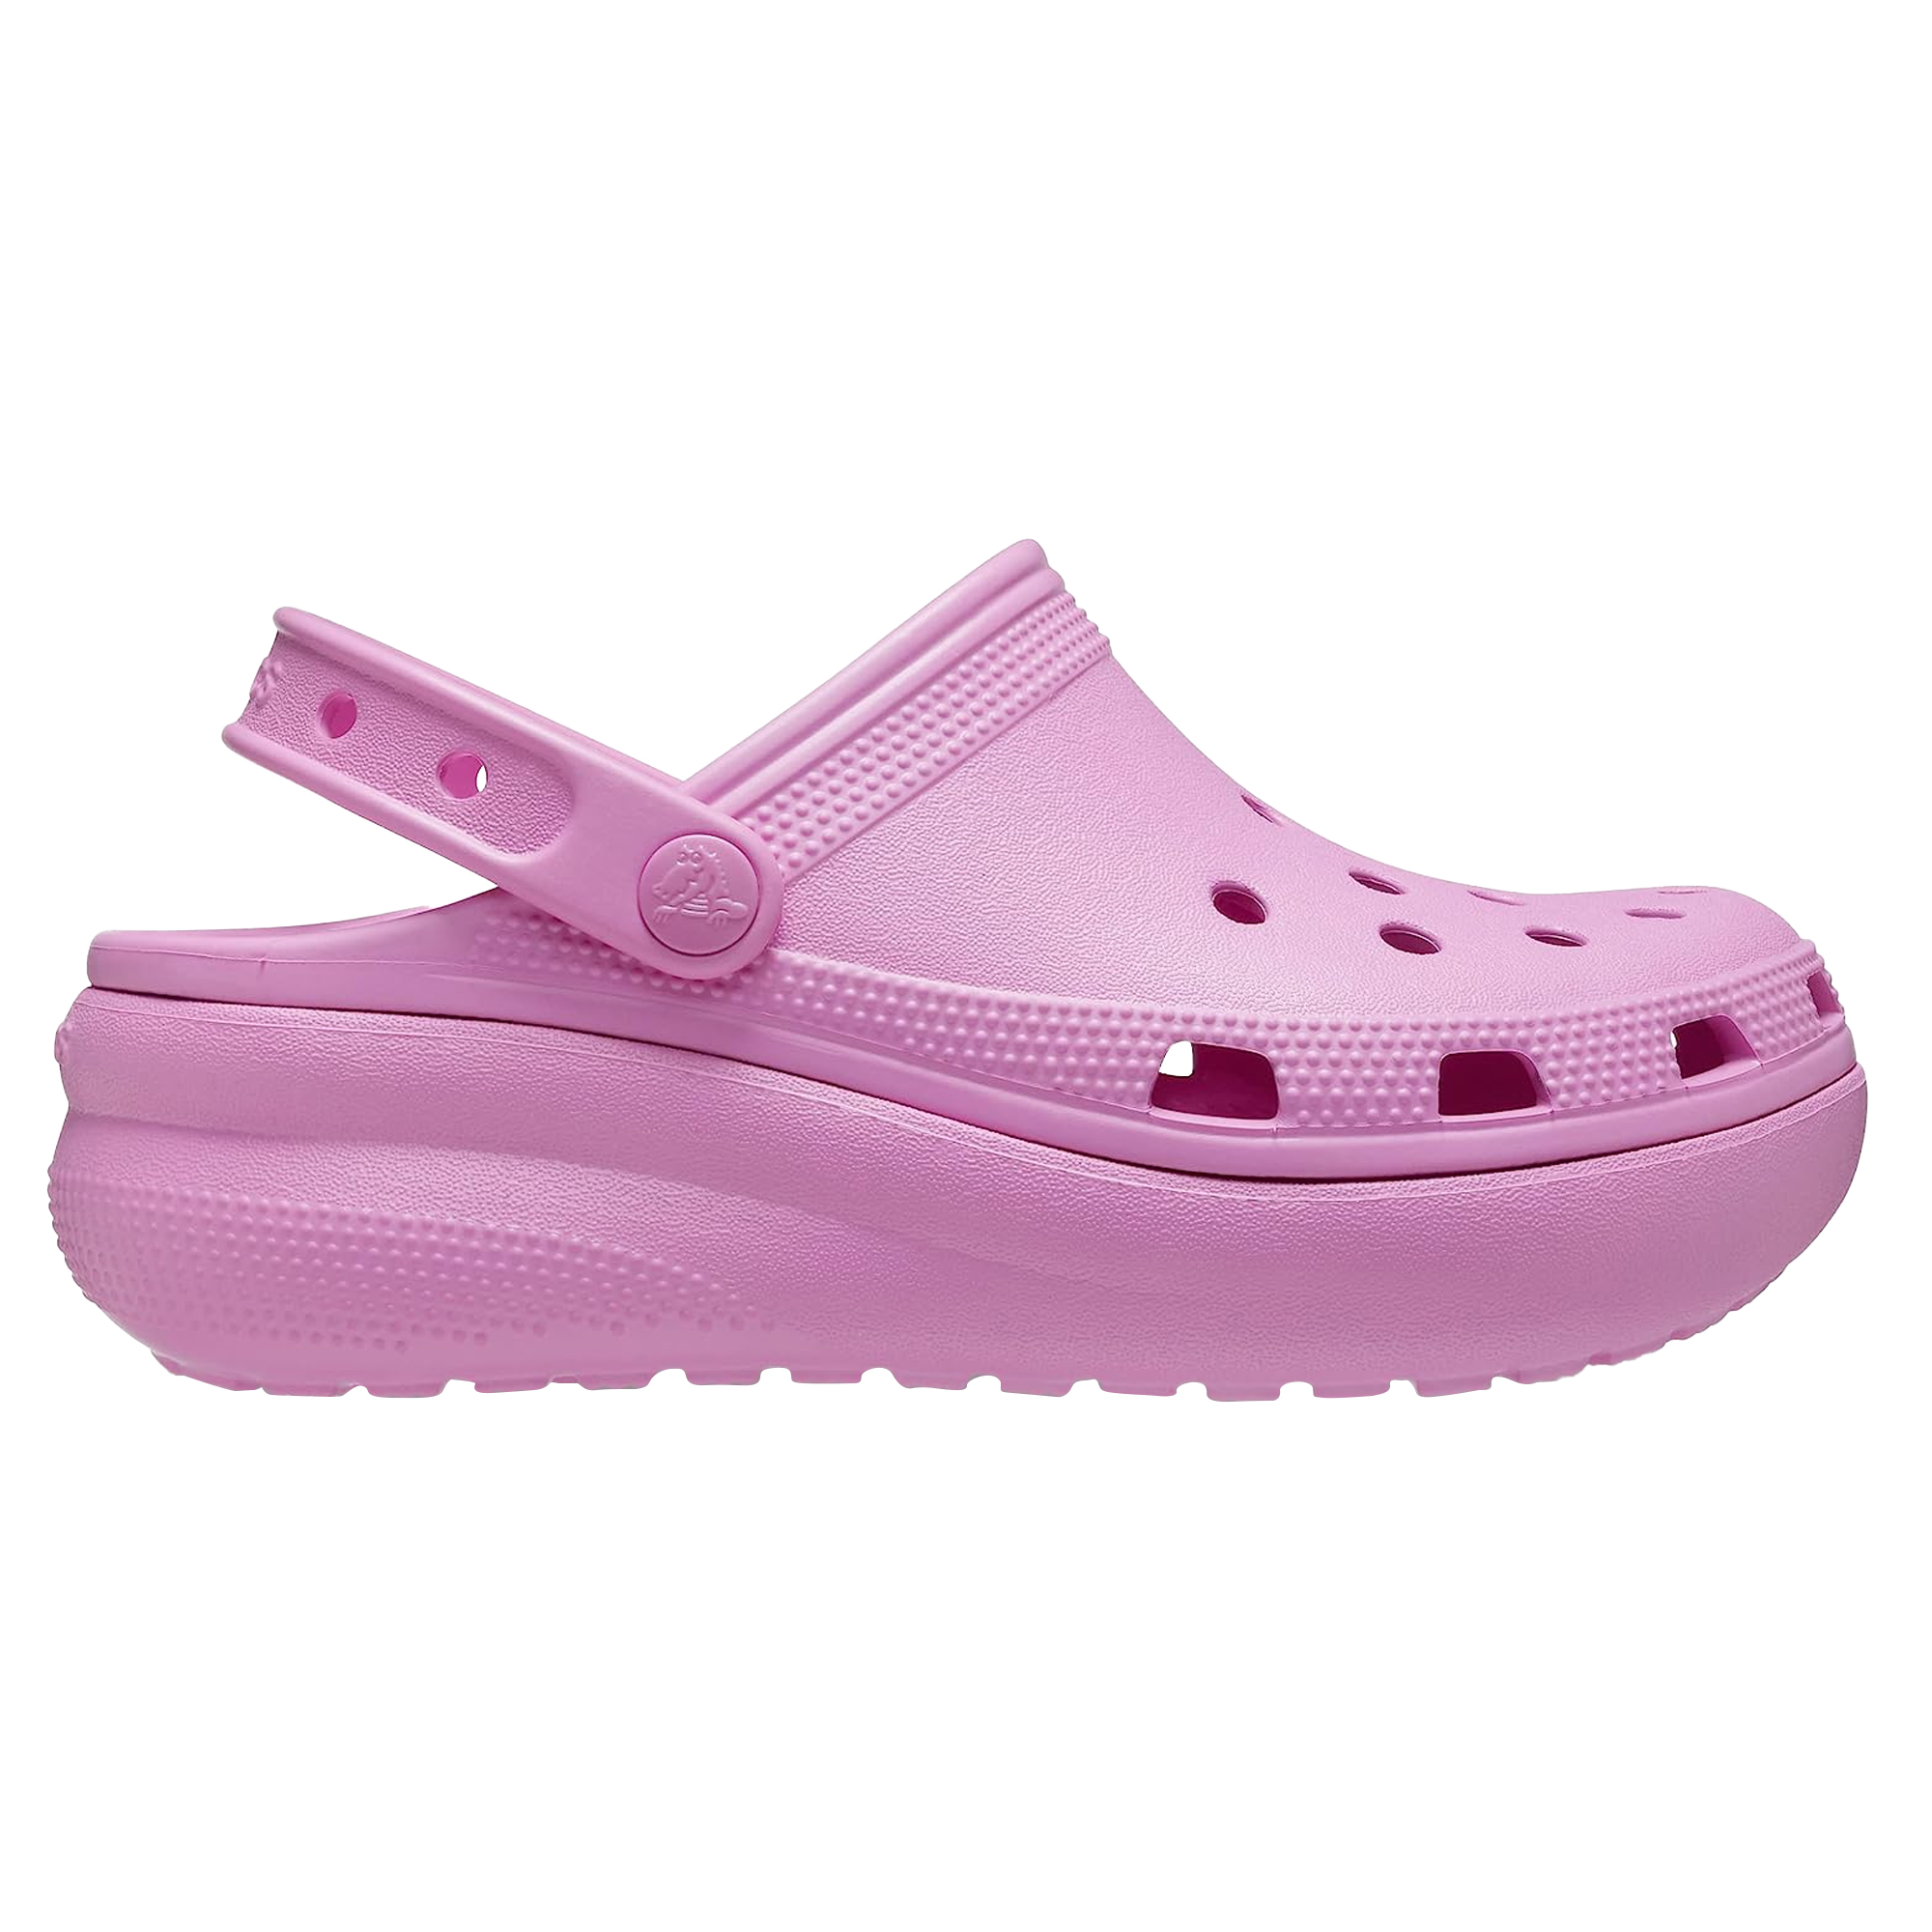 Tienda online de zapatos - Comprar calzado online Crocs